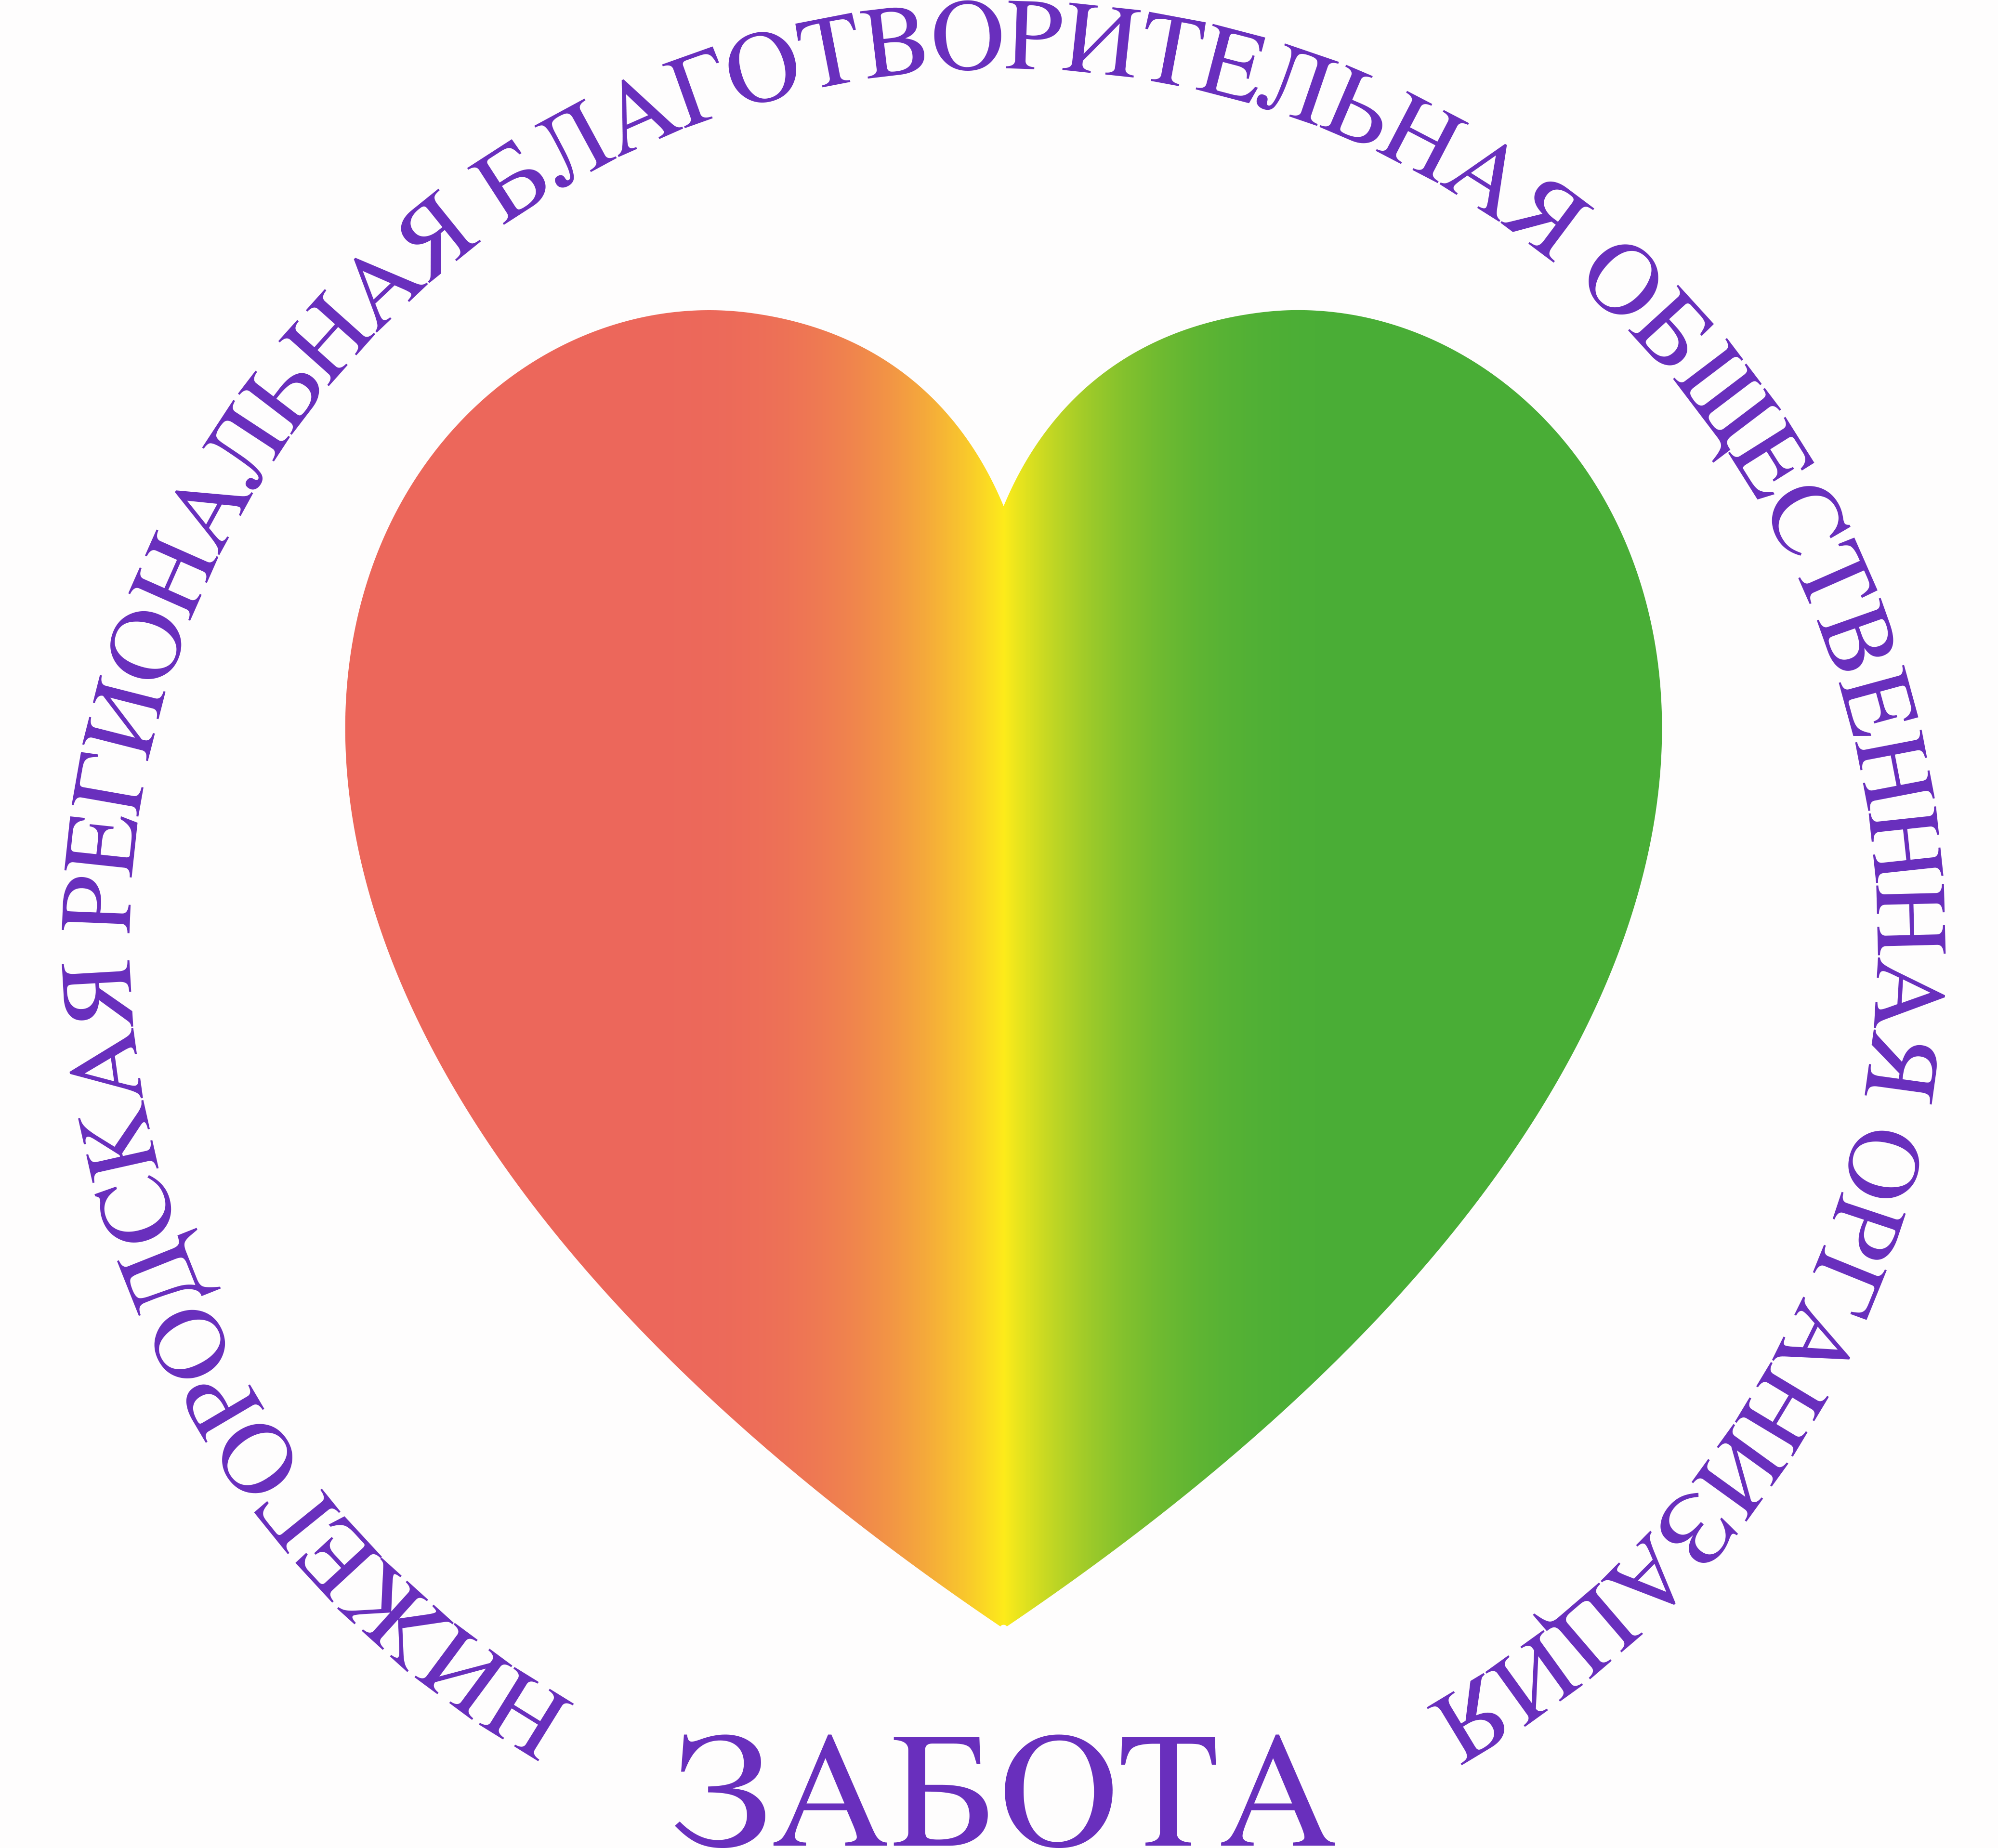 Социально благотворительное учреждение. Благотворительная организация забота Нижний Новгород. Забота. Логотипы благотворительных организаций. Забота эмблема.